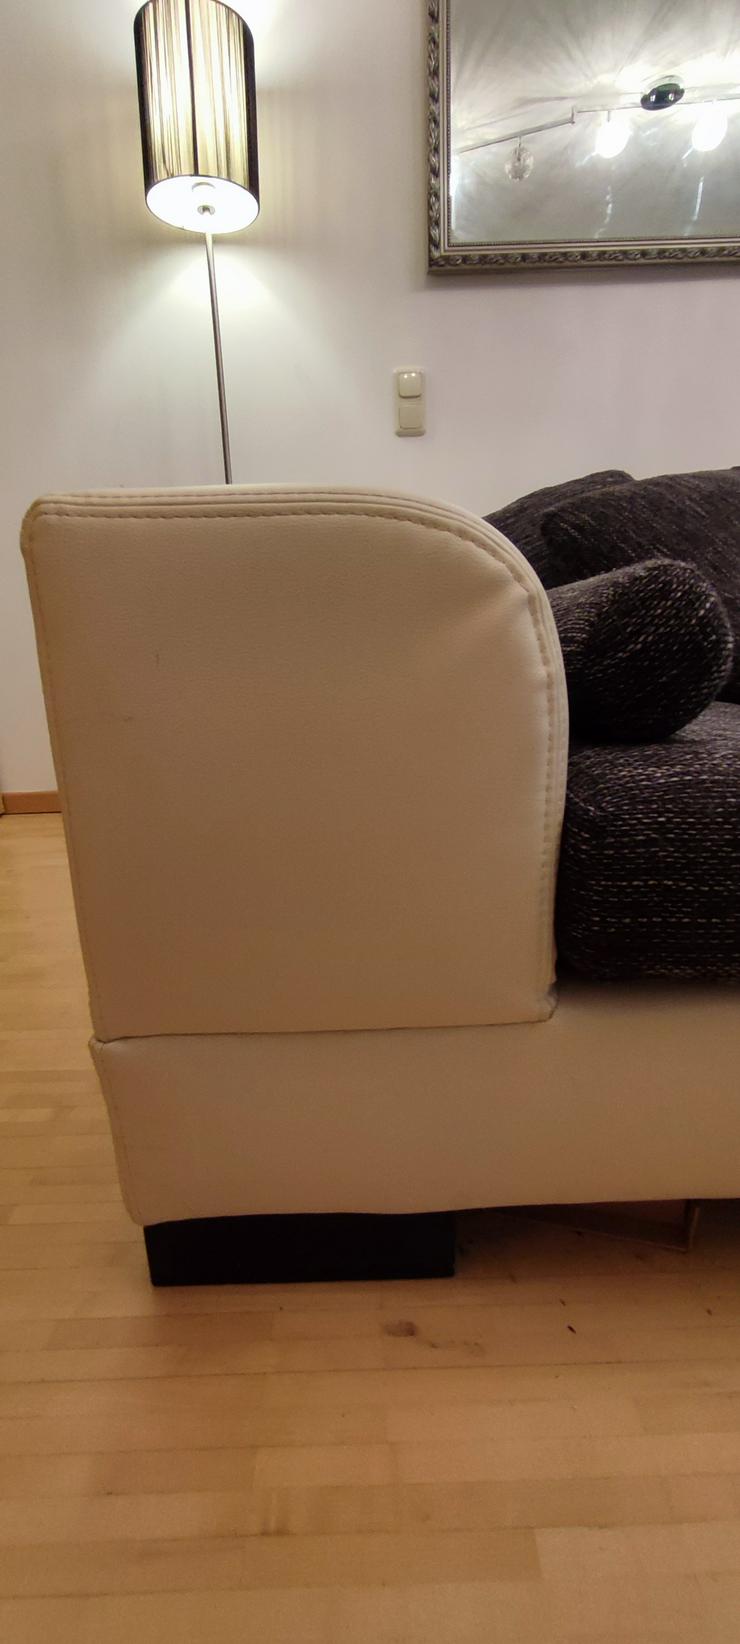 Bild 4: Grau-weißes Sofa